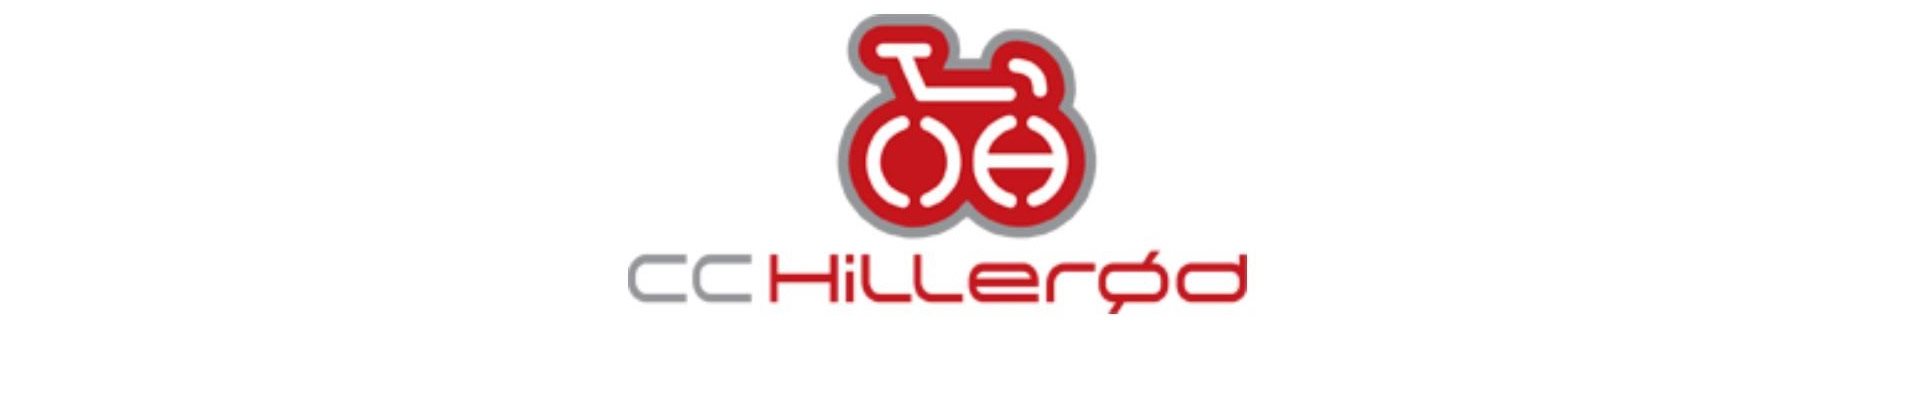 Hillerød CC Grand Prix 2021